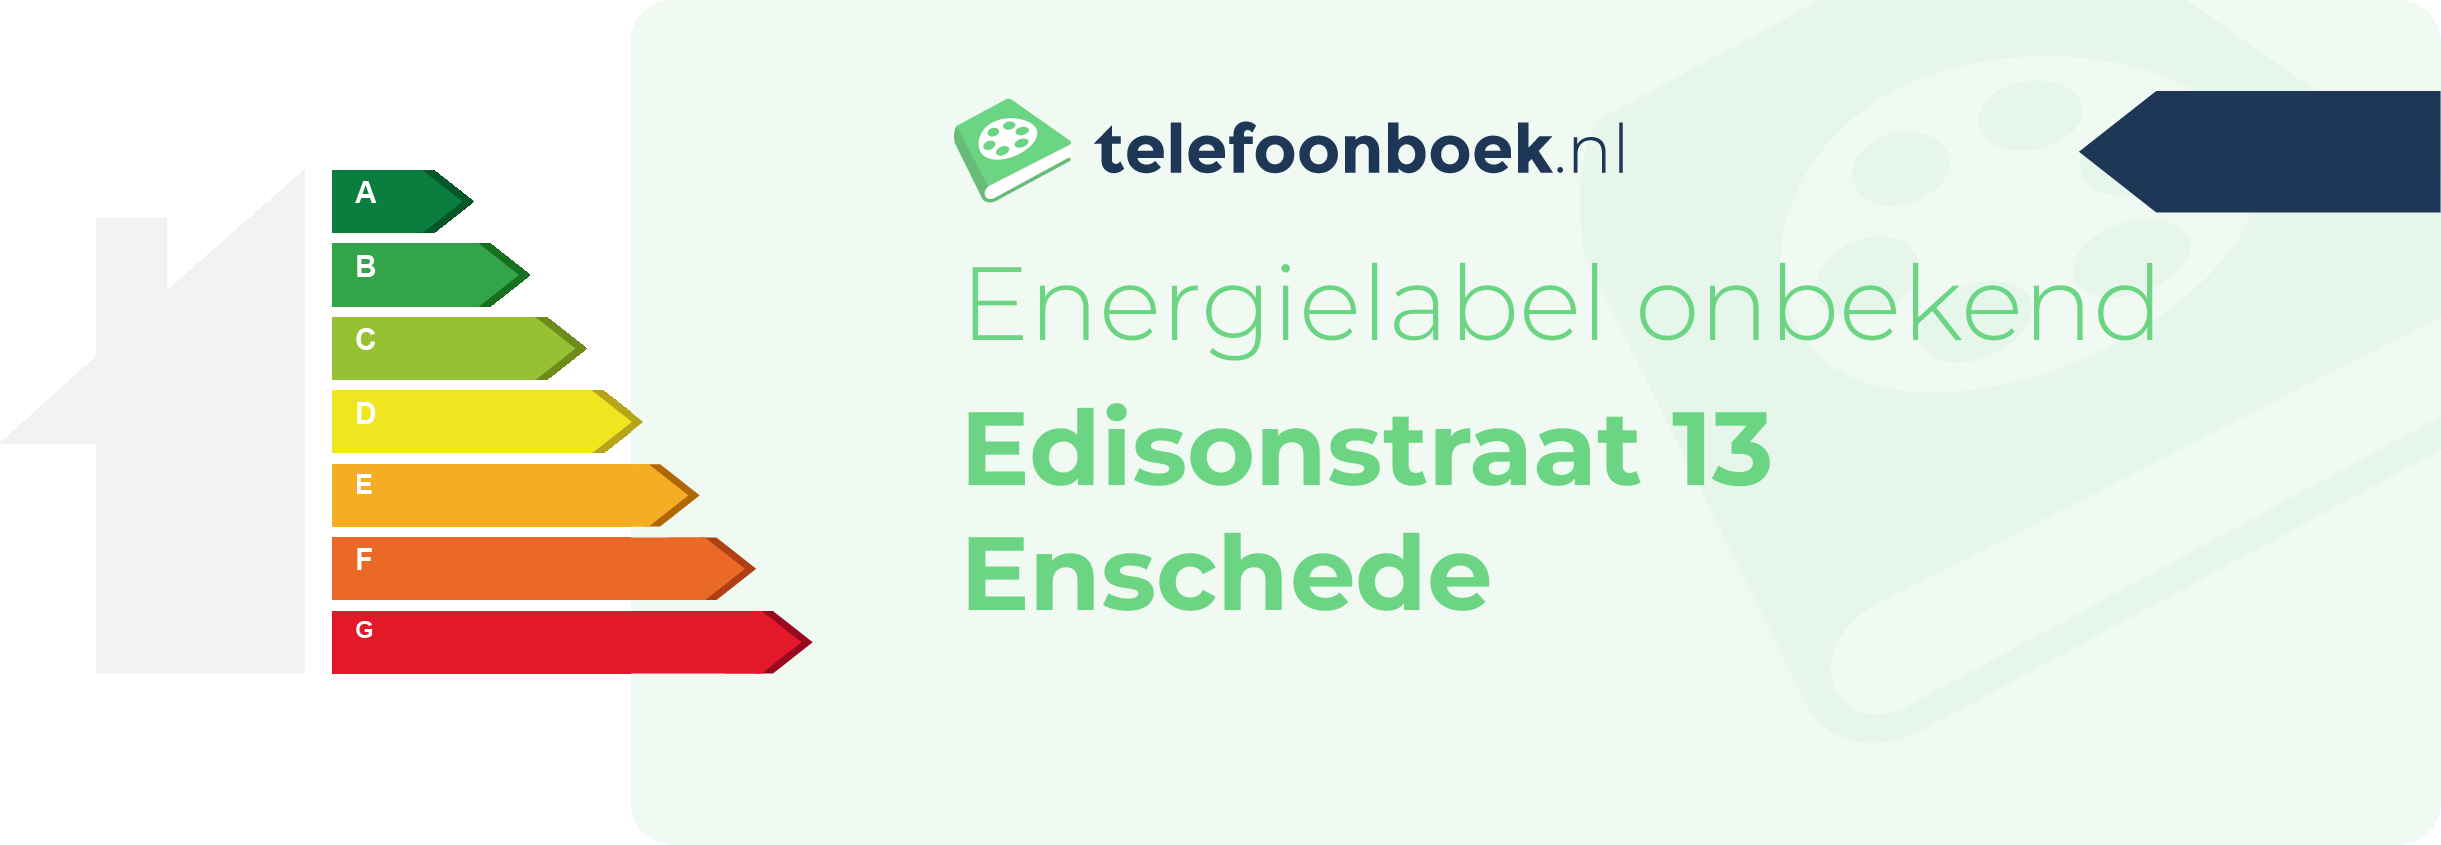 Energielabel Edisonstraat 13 Enschede